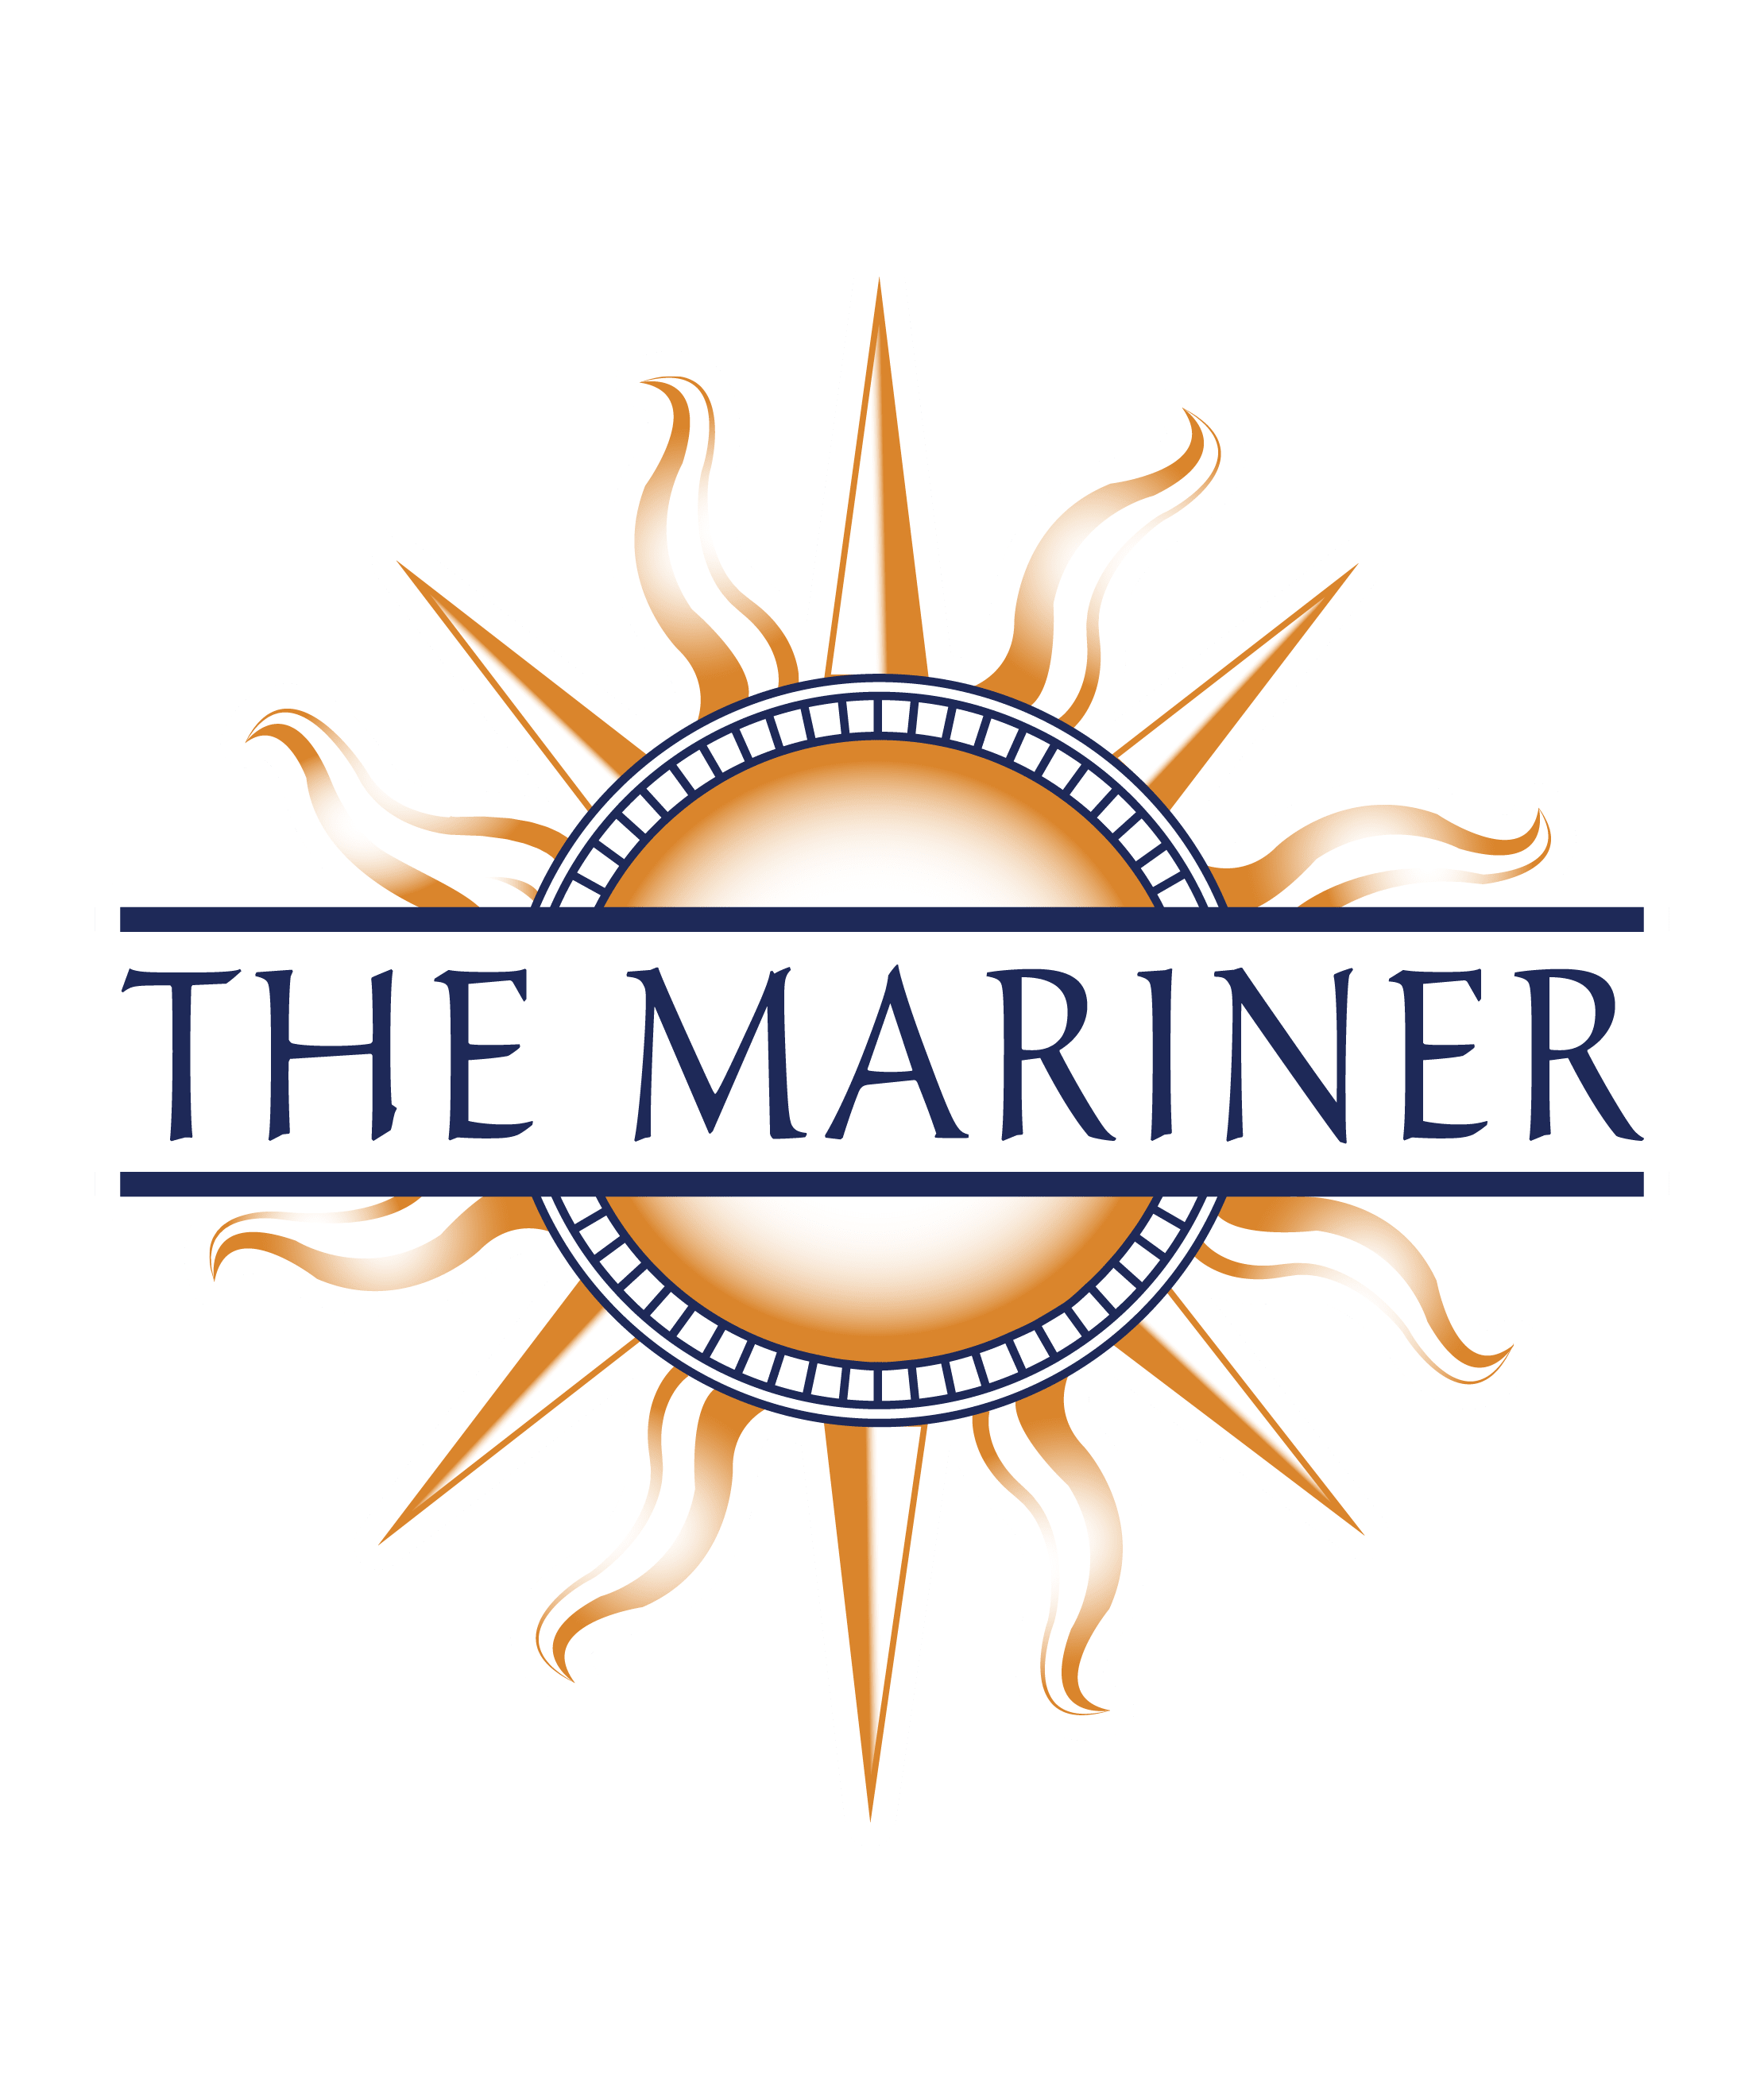 Mariner at South Shores